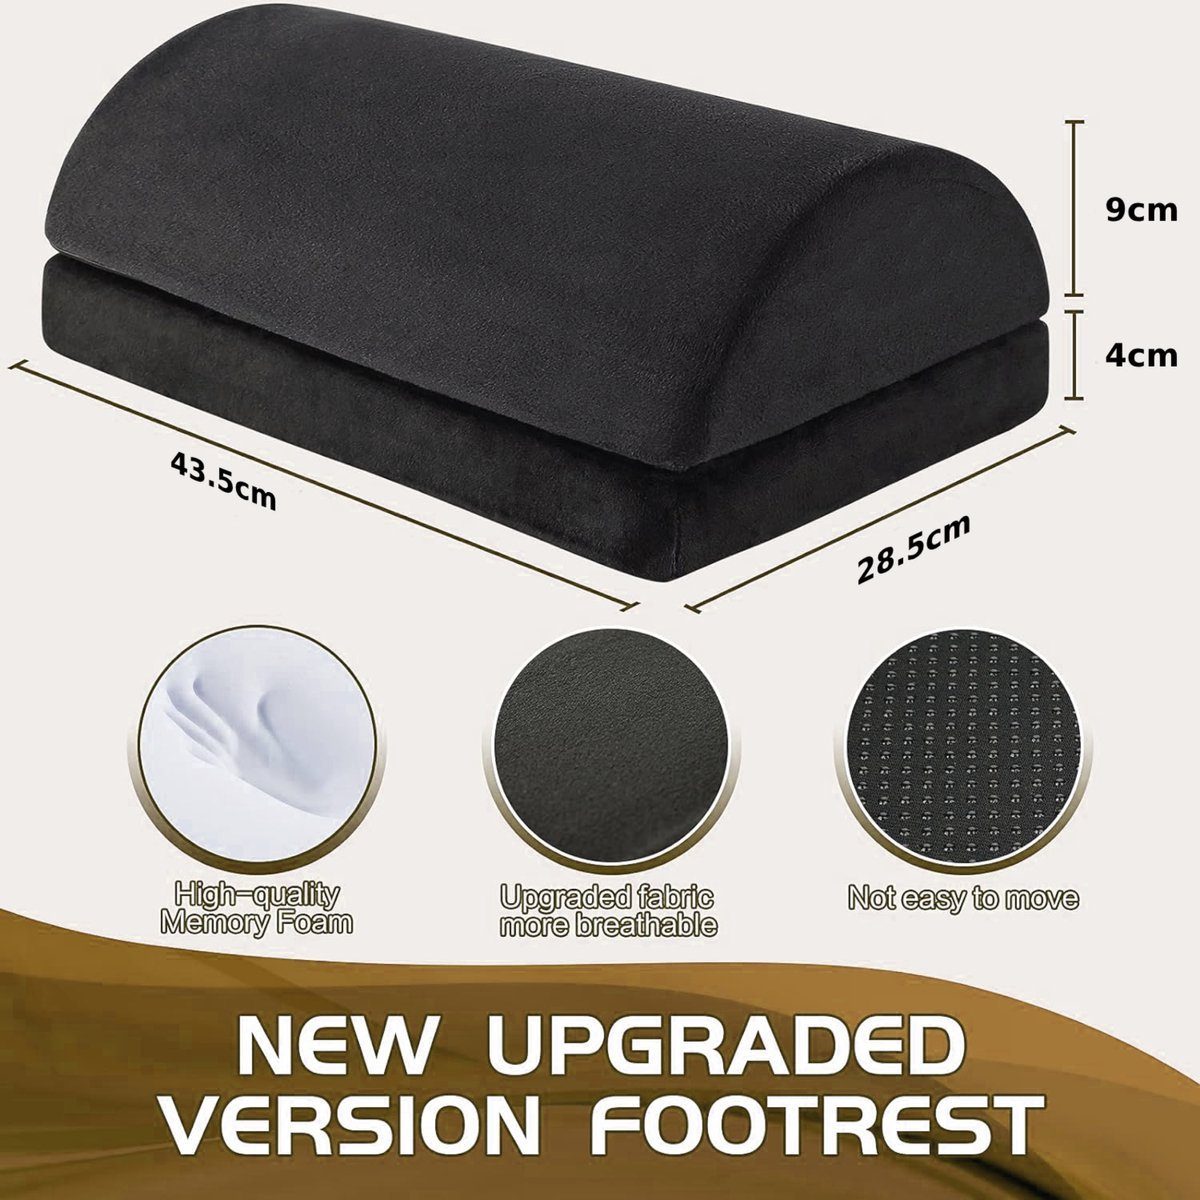 für Schreibtisch Fußstütze ergonomie - Geeignet Universal-Fußmatten oder Haus - BOTC Fußstütze Büro, - abwaschbar schwarz -